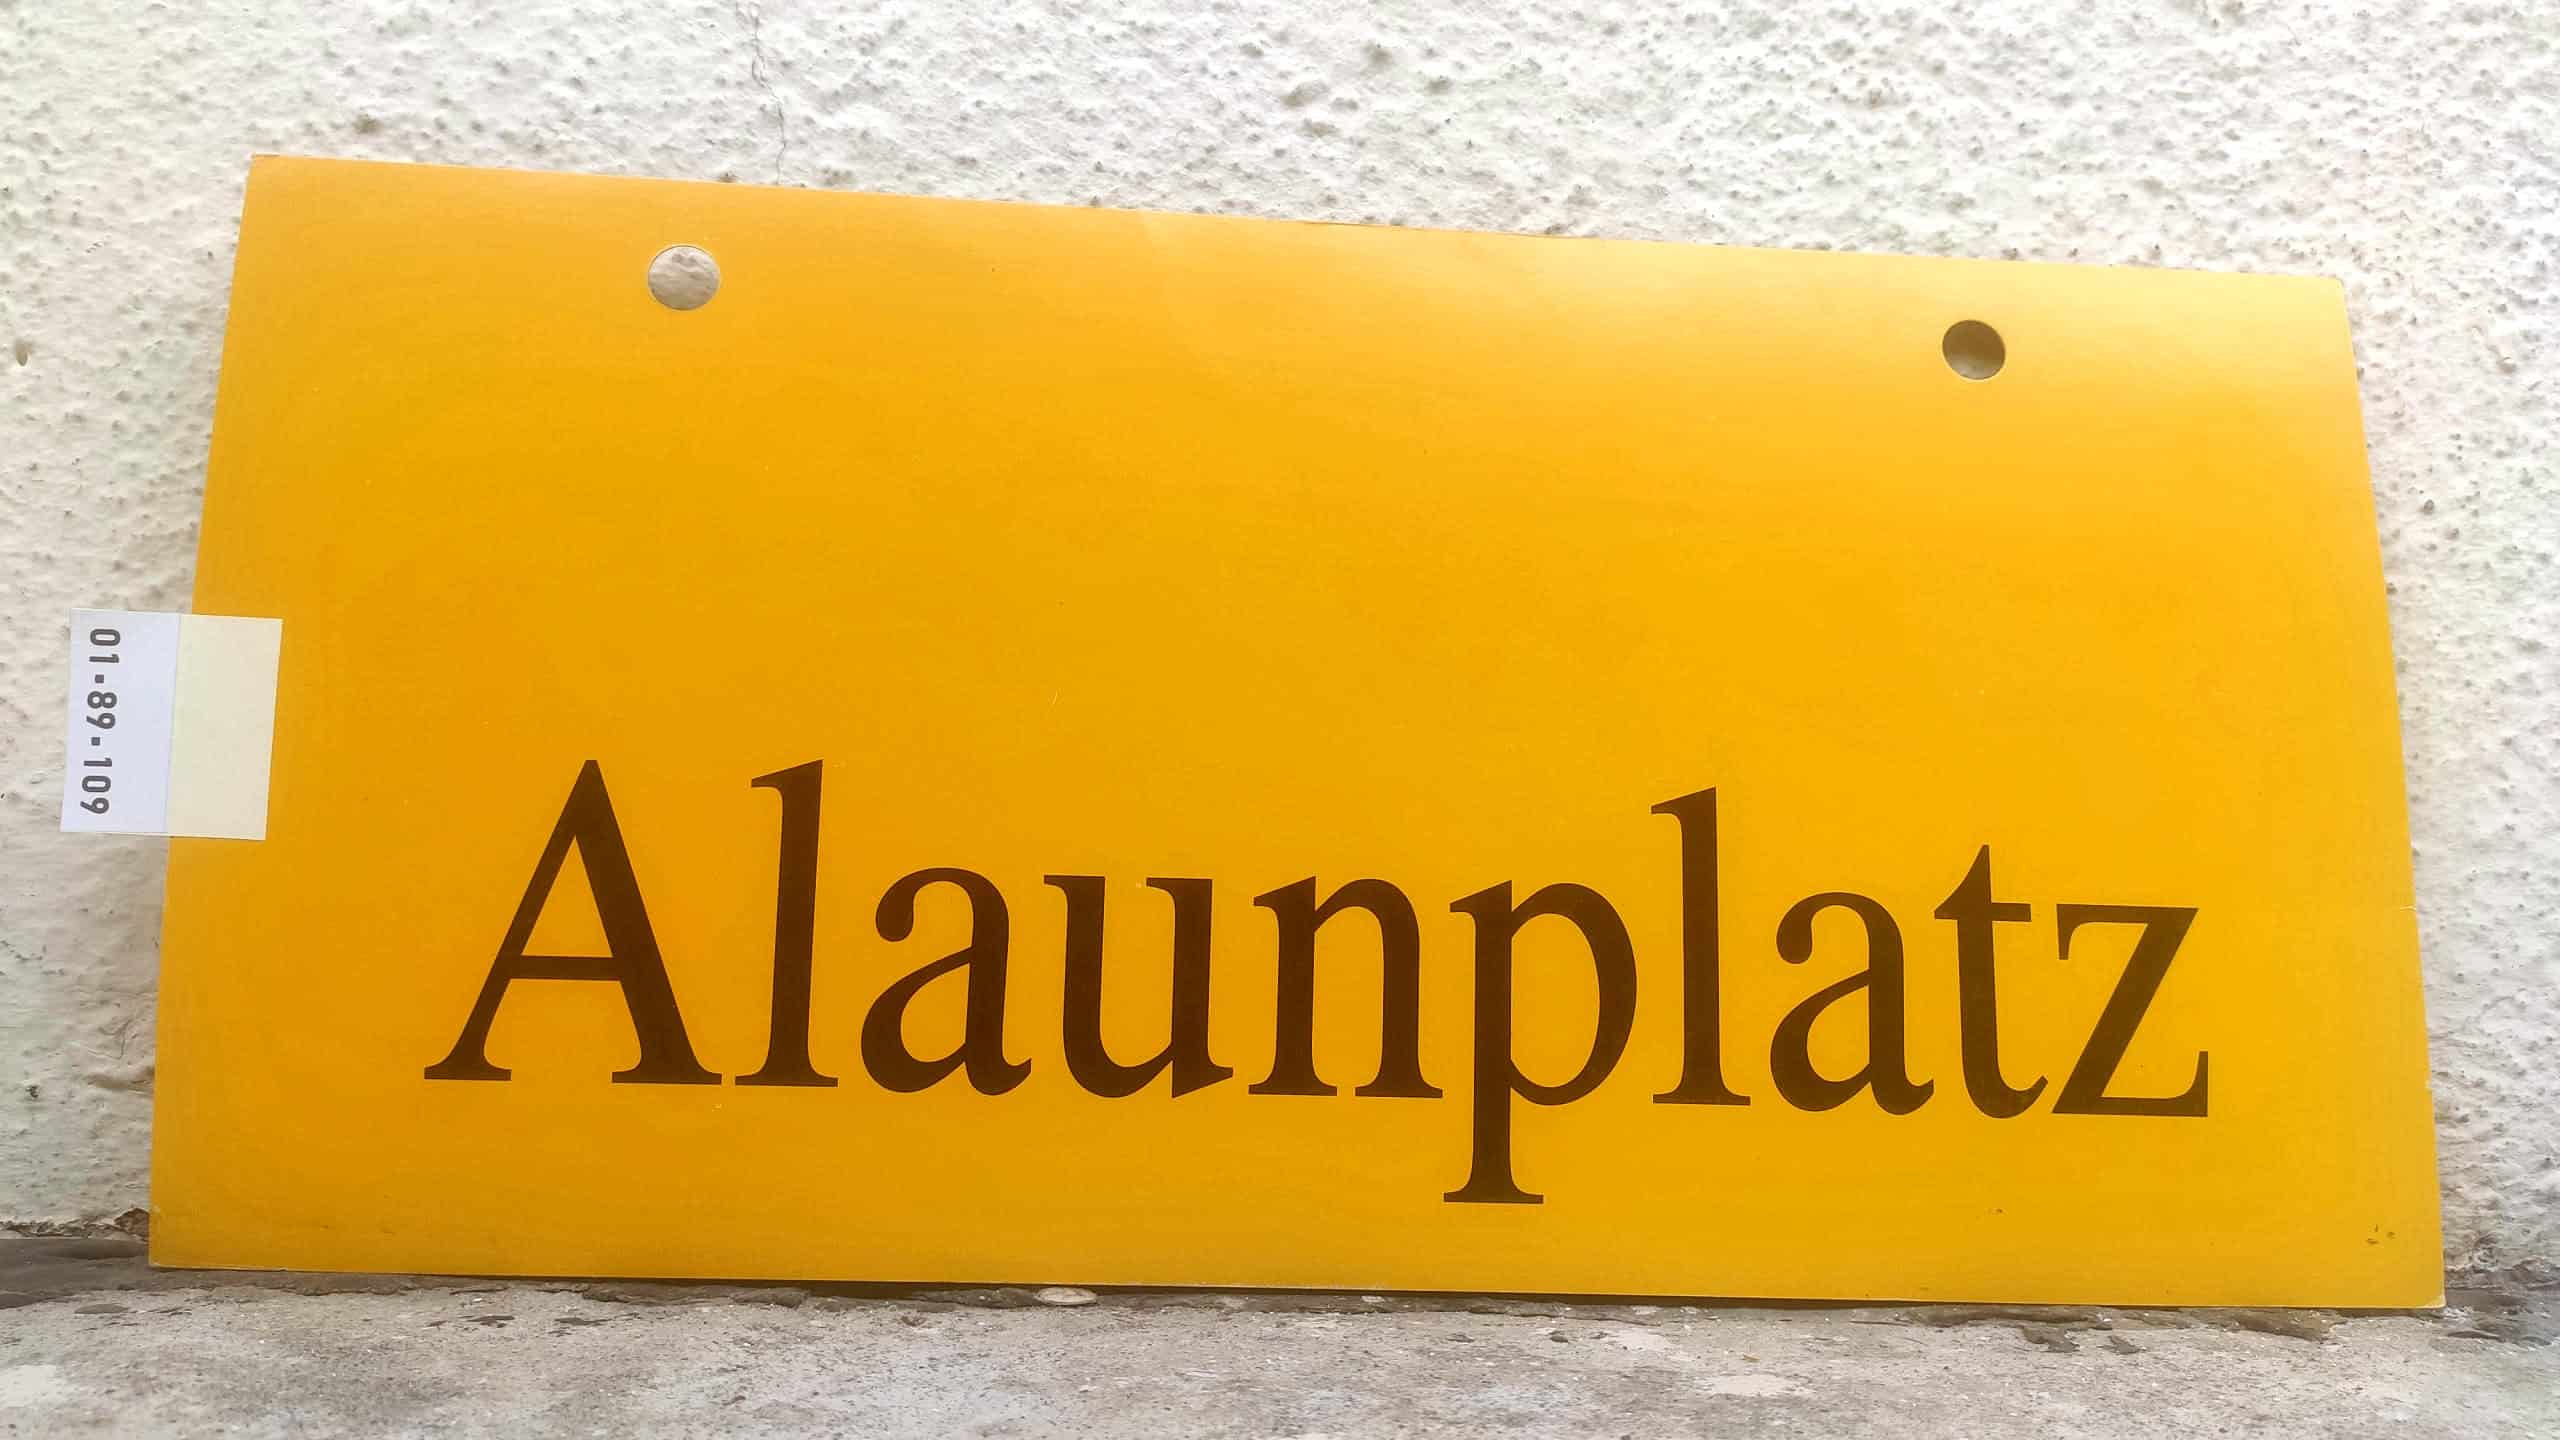 Alaunplatz